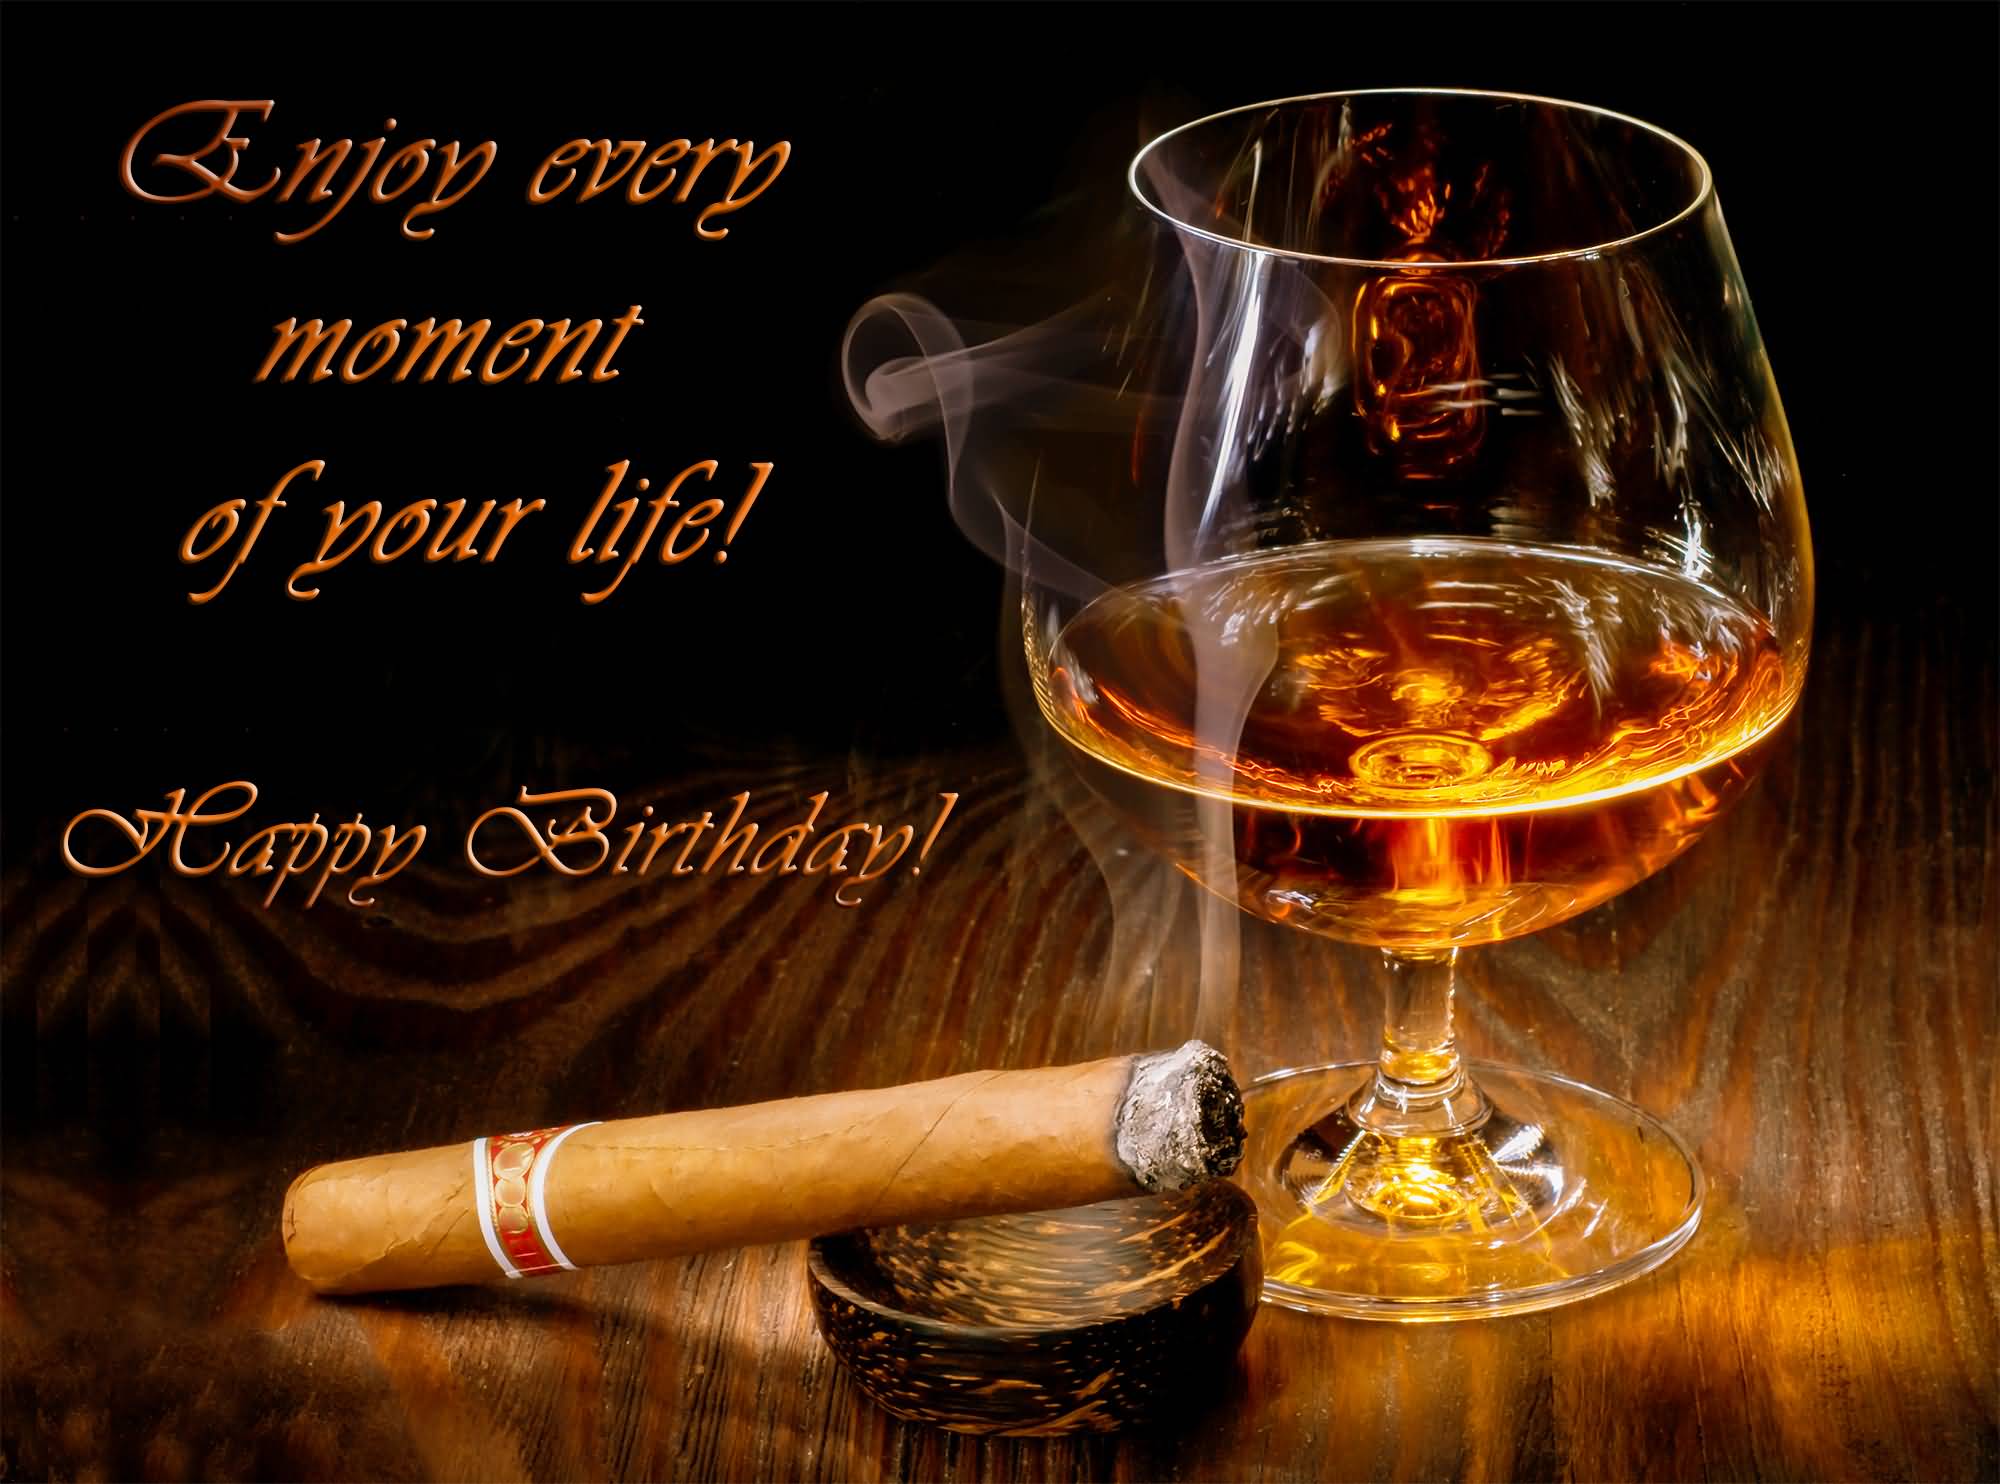 Best brandy birthday wish for Godfather